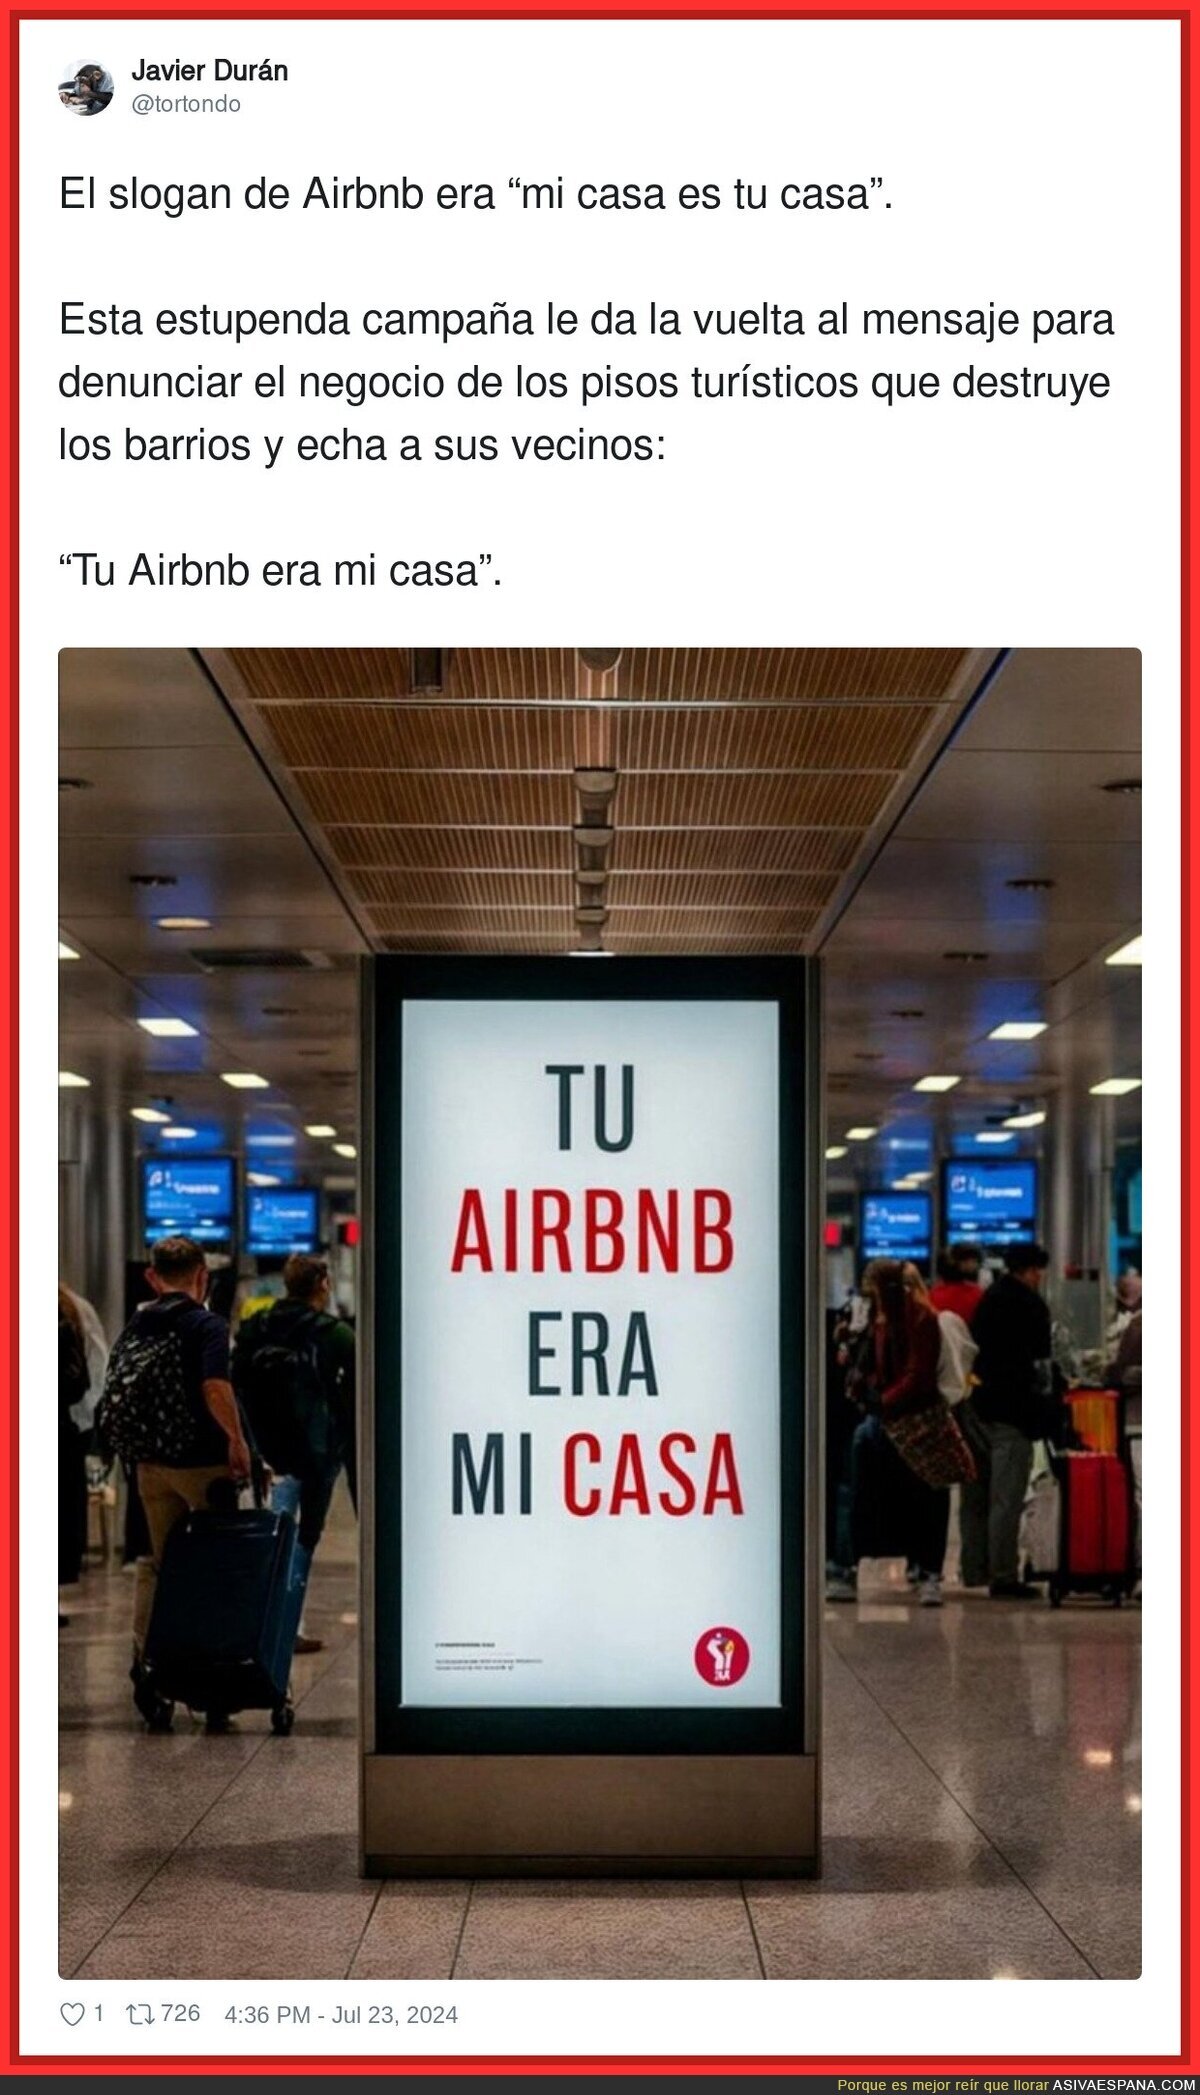 Un mensaje claro y contundente contra Airbnb